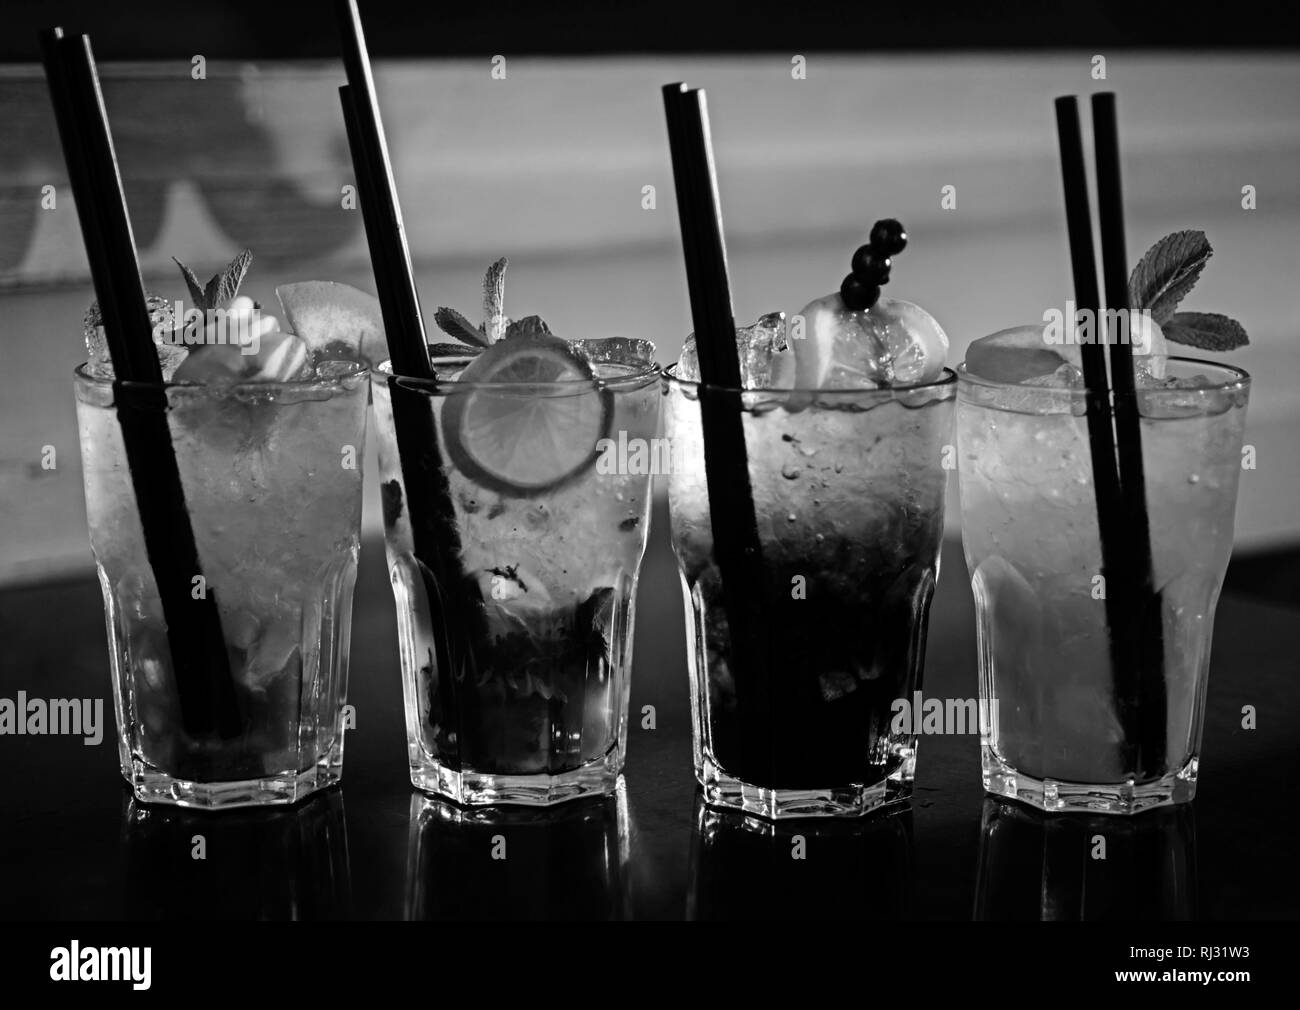 Una piena misura di barre. Cocktail bevande servite in bicchieri con cannucce. Bevande con ghiaccio in bicchieri da cocktail. Bevande bevande mescolate con ghiaccio. Succosa Foto Stock